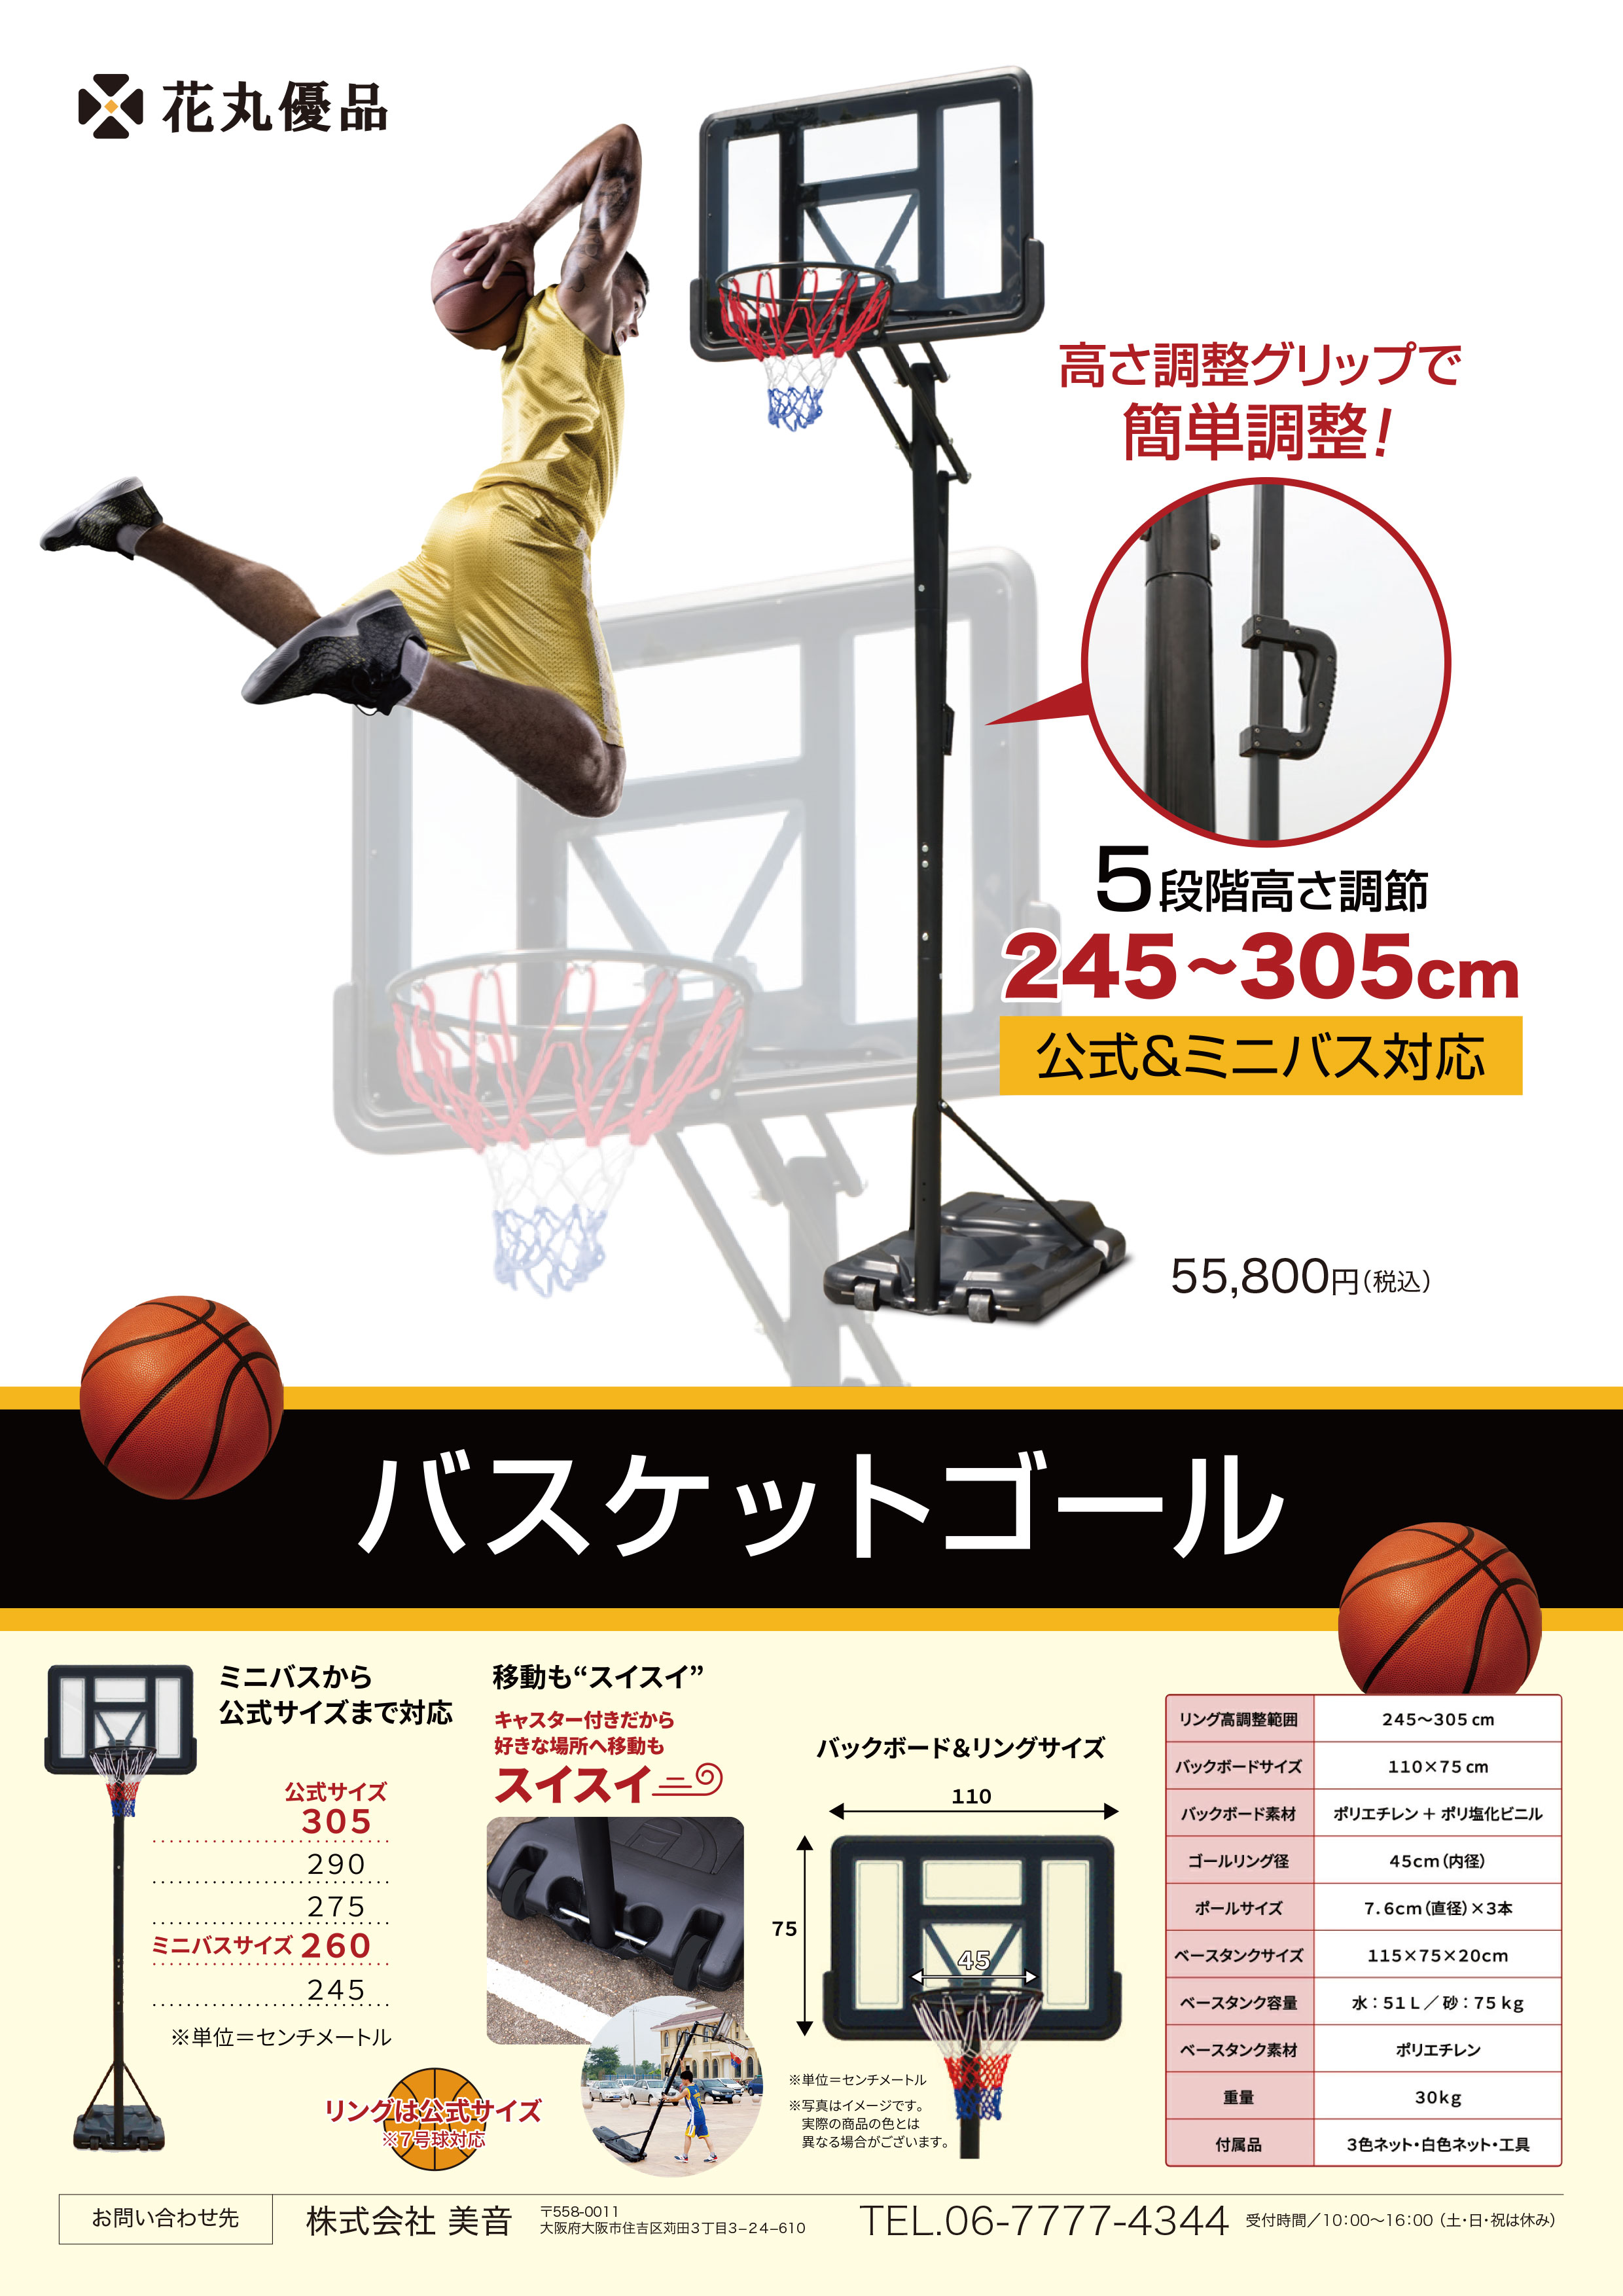 バスケットゴール 屋外 家庭用 バスケットボール ゴール 高さ調節可能 組み立て バスケット 公式サイズ対応 練習 7号球対応 工具 キャスター付き  1年保証